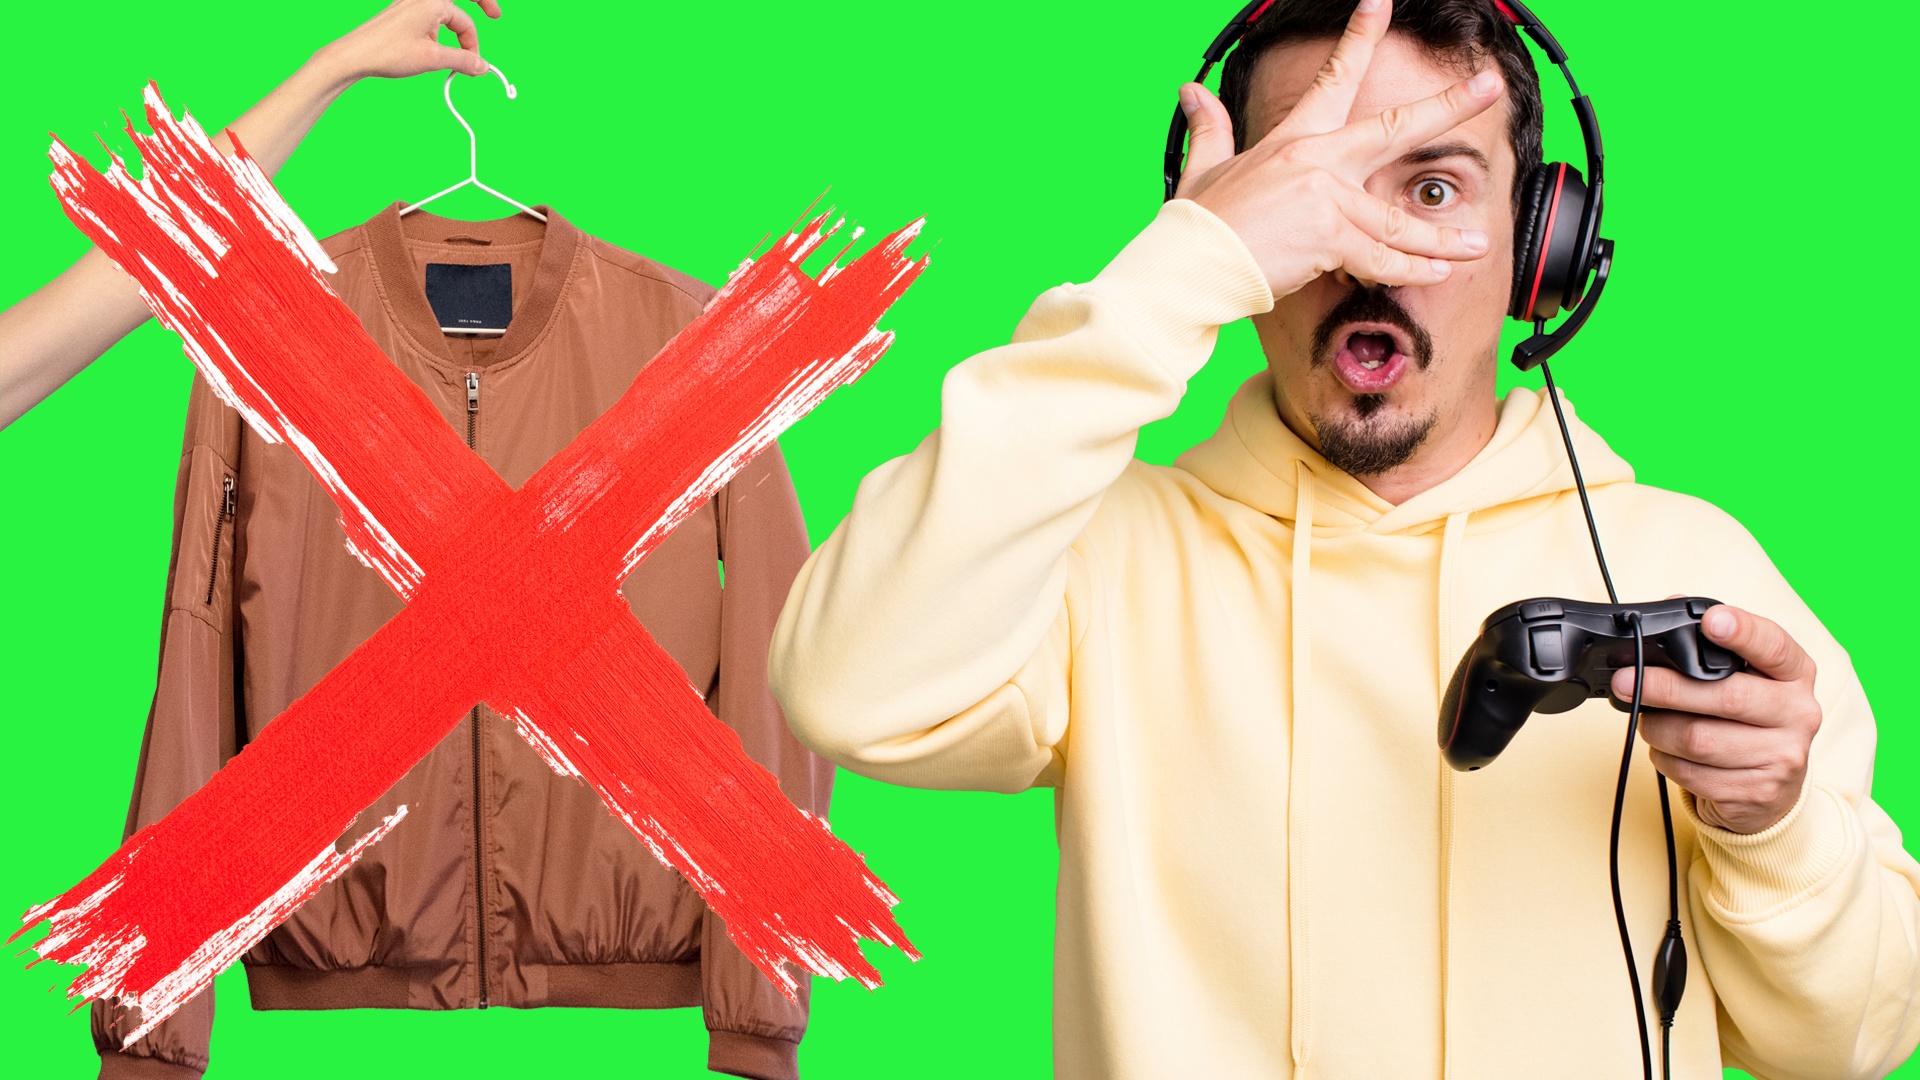 #Hässlich, aber teuer: Diese Gamer-Jacke schmerzt in den Augen – und macht euch arm